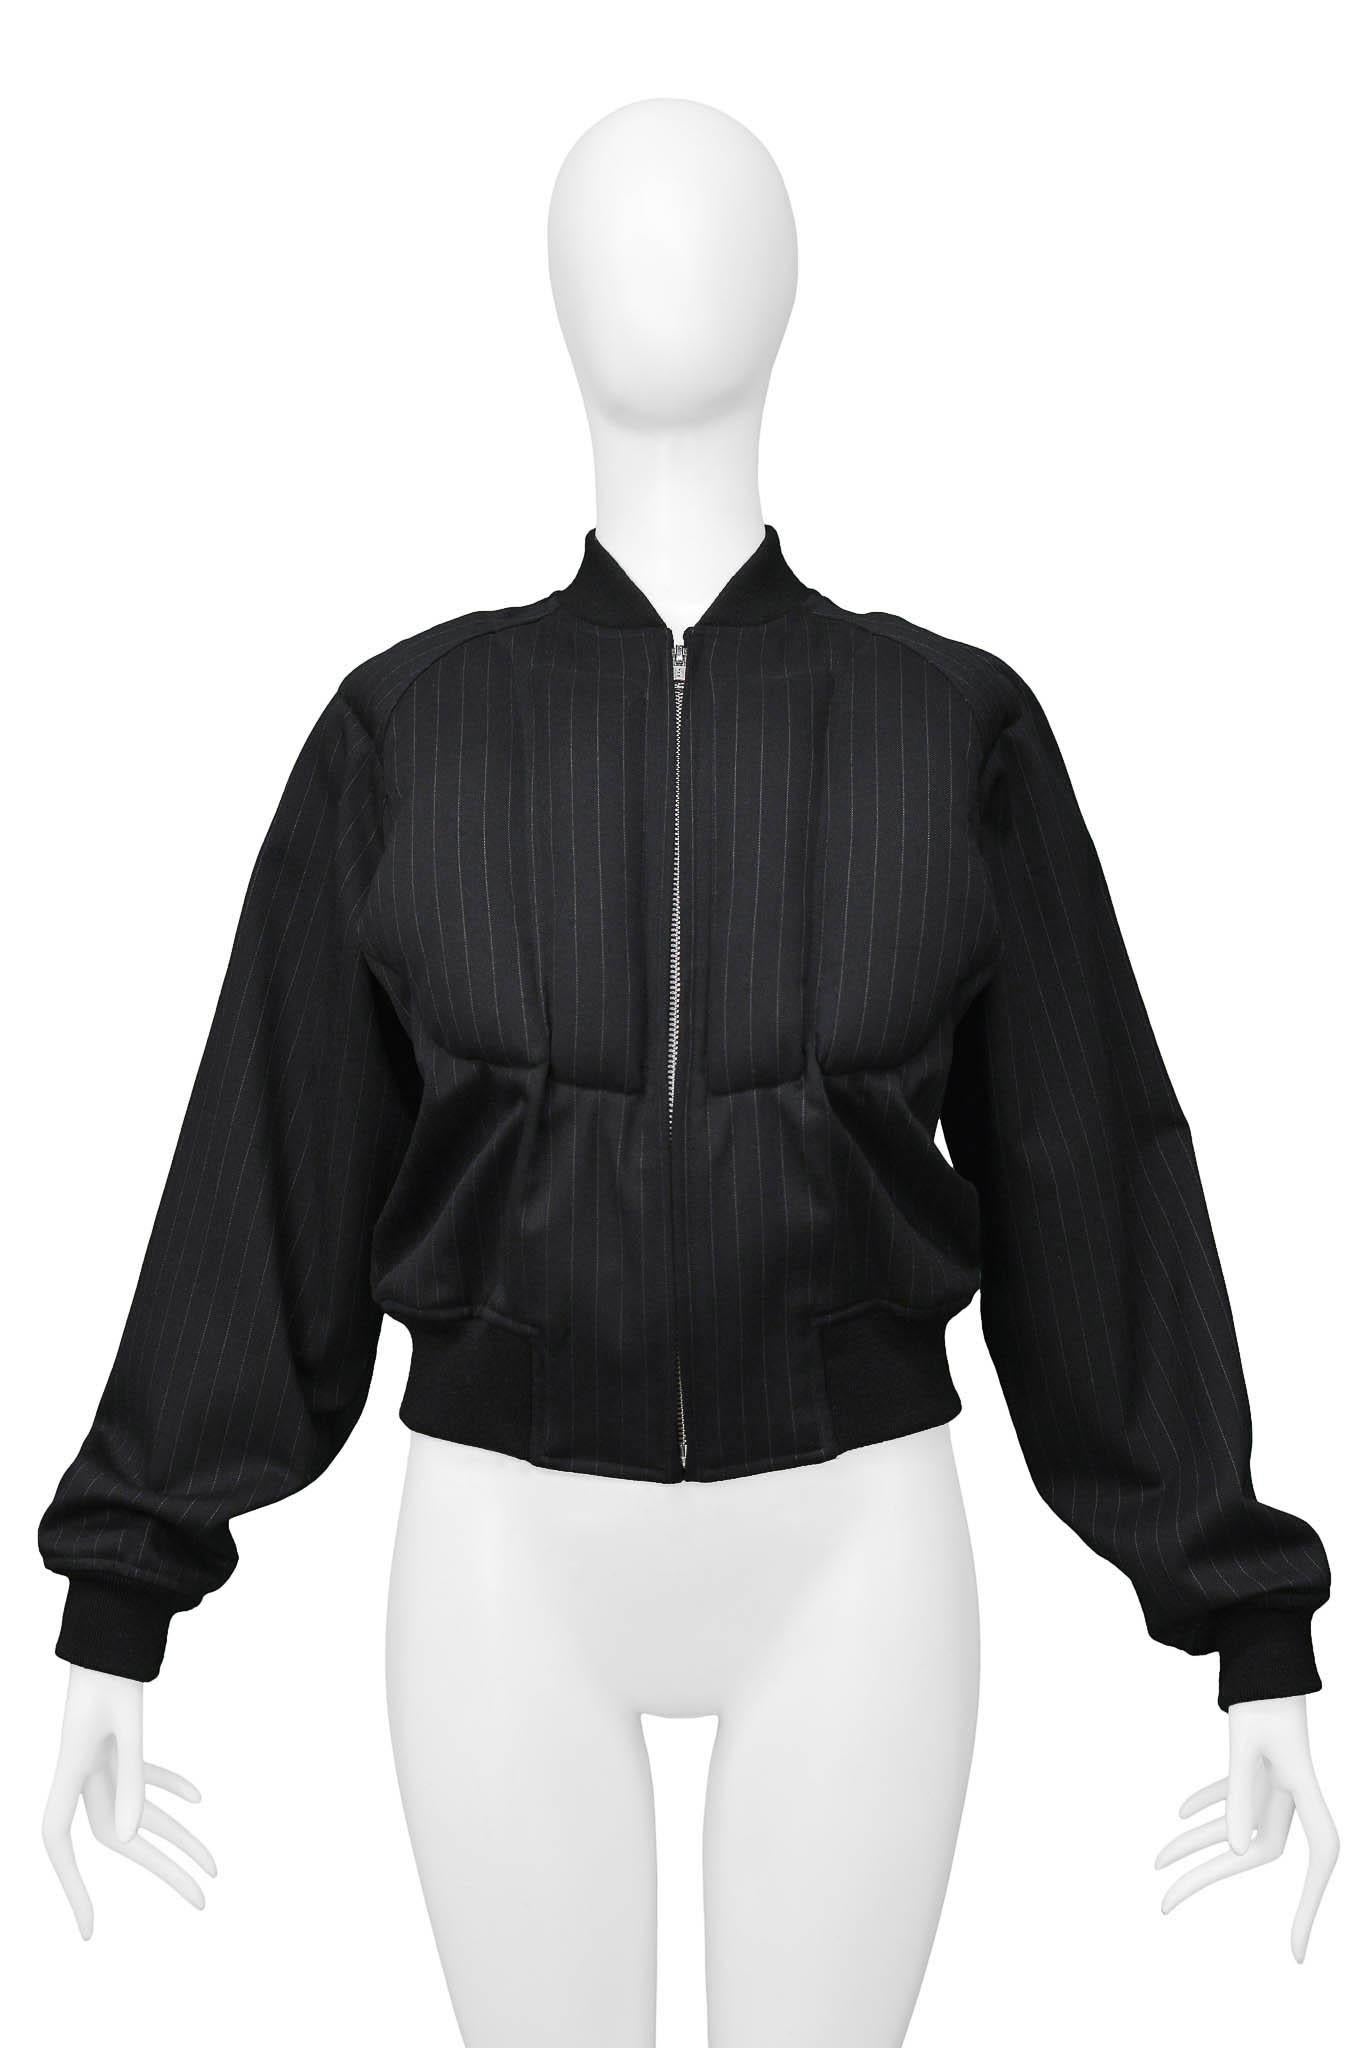 Resurrection Vintage a le plaisir de vous proposer une veste vintage à rayures noires de la marque Comme des Garcons, avec un padding sur le devant et le dos de la veste, une fermeture éclair en métal, et des bordures noires le long des manches, de